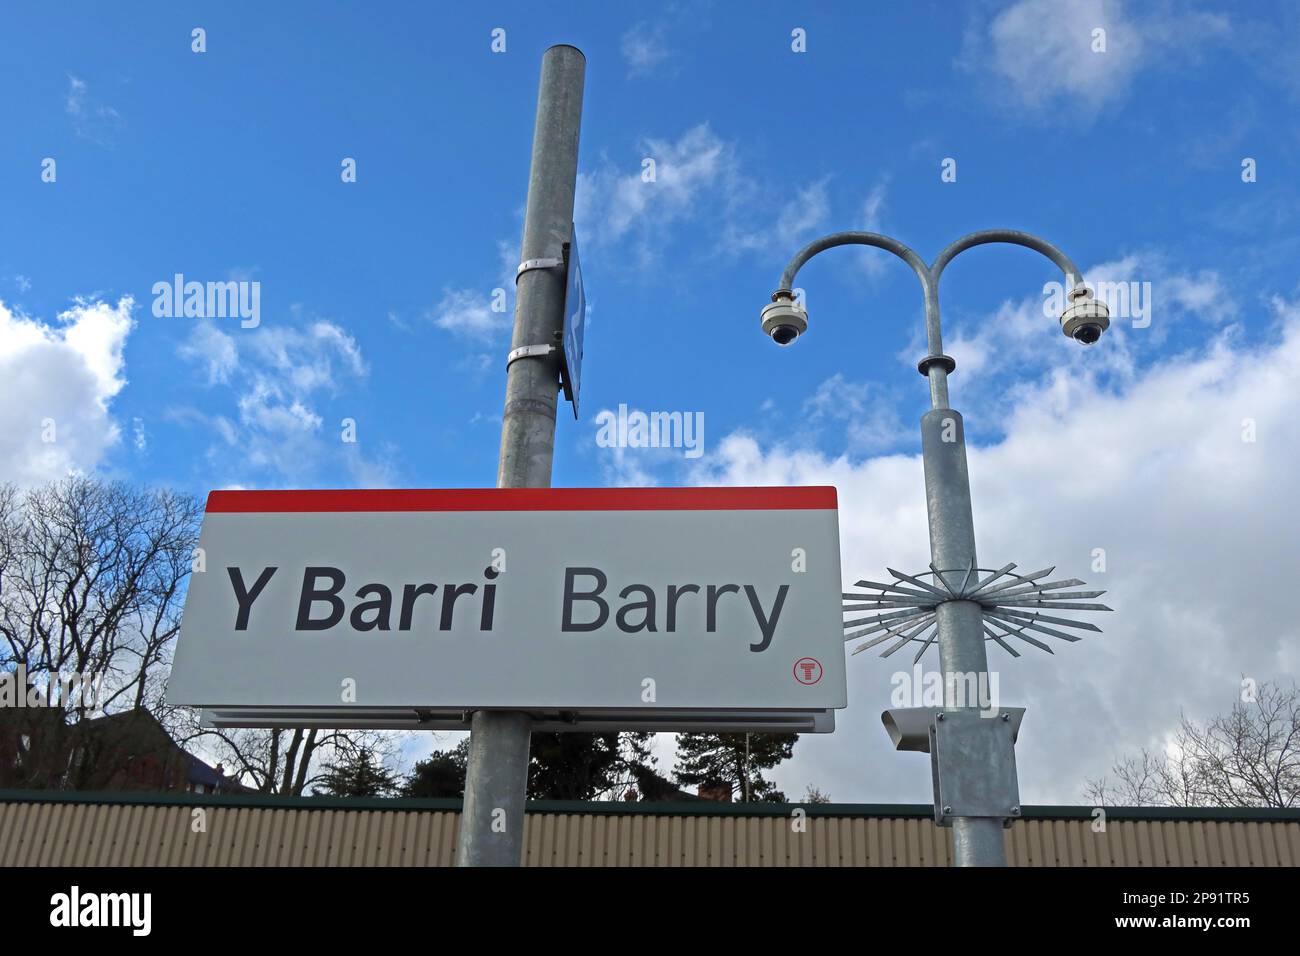 Cielo blu alla stazione ferroviaria di Barry cartello con CCTV, Broad Street, ( Y Barri), vale of Glamorgan, Galles del Sud, Cymru, Regno Unito Foto Stock